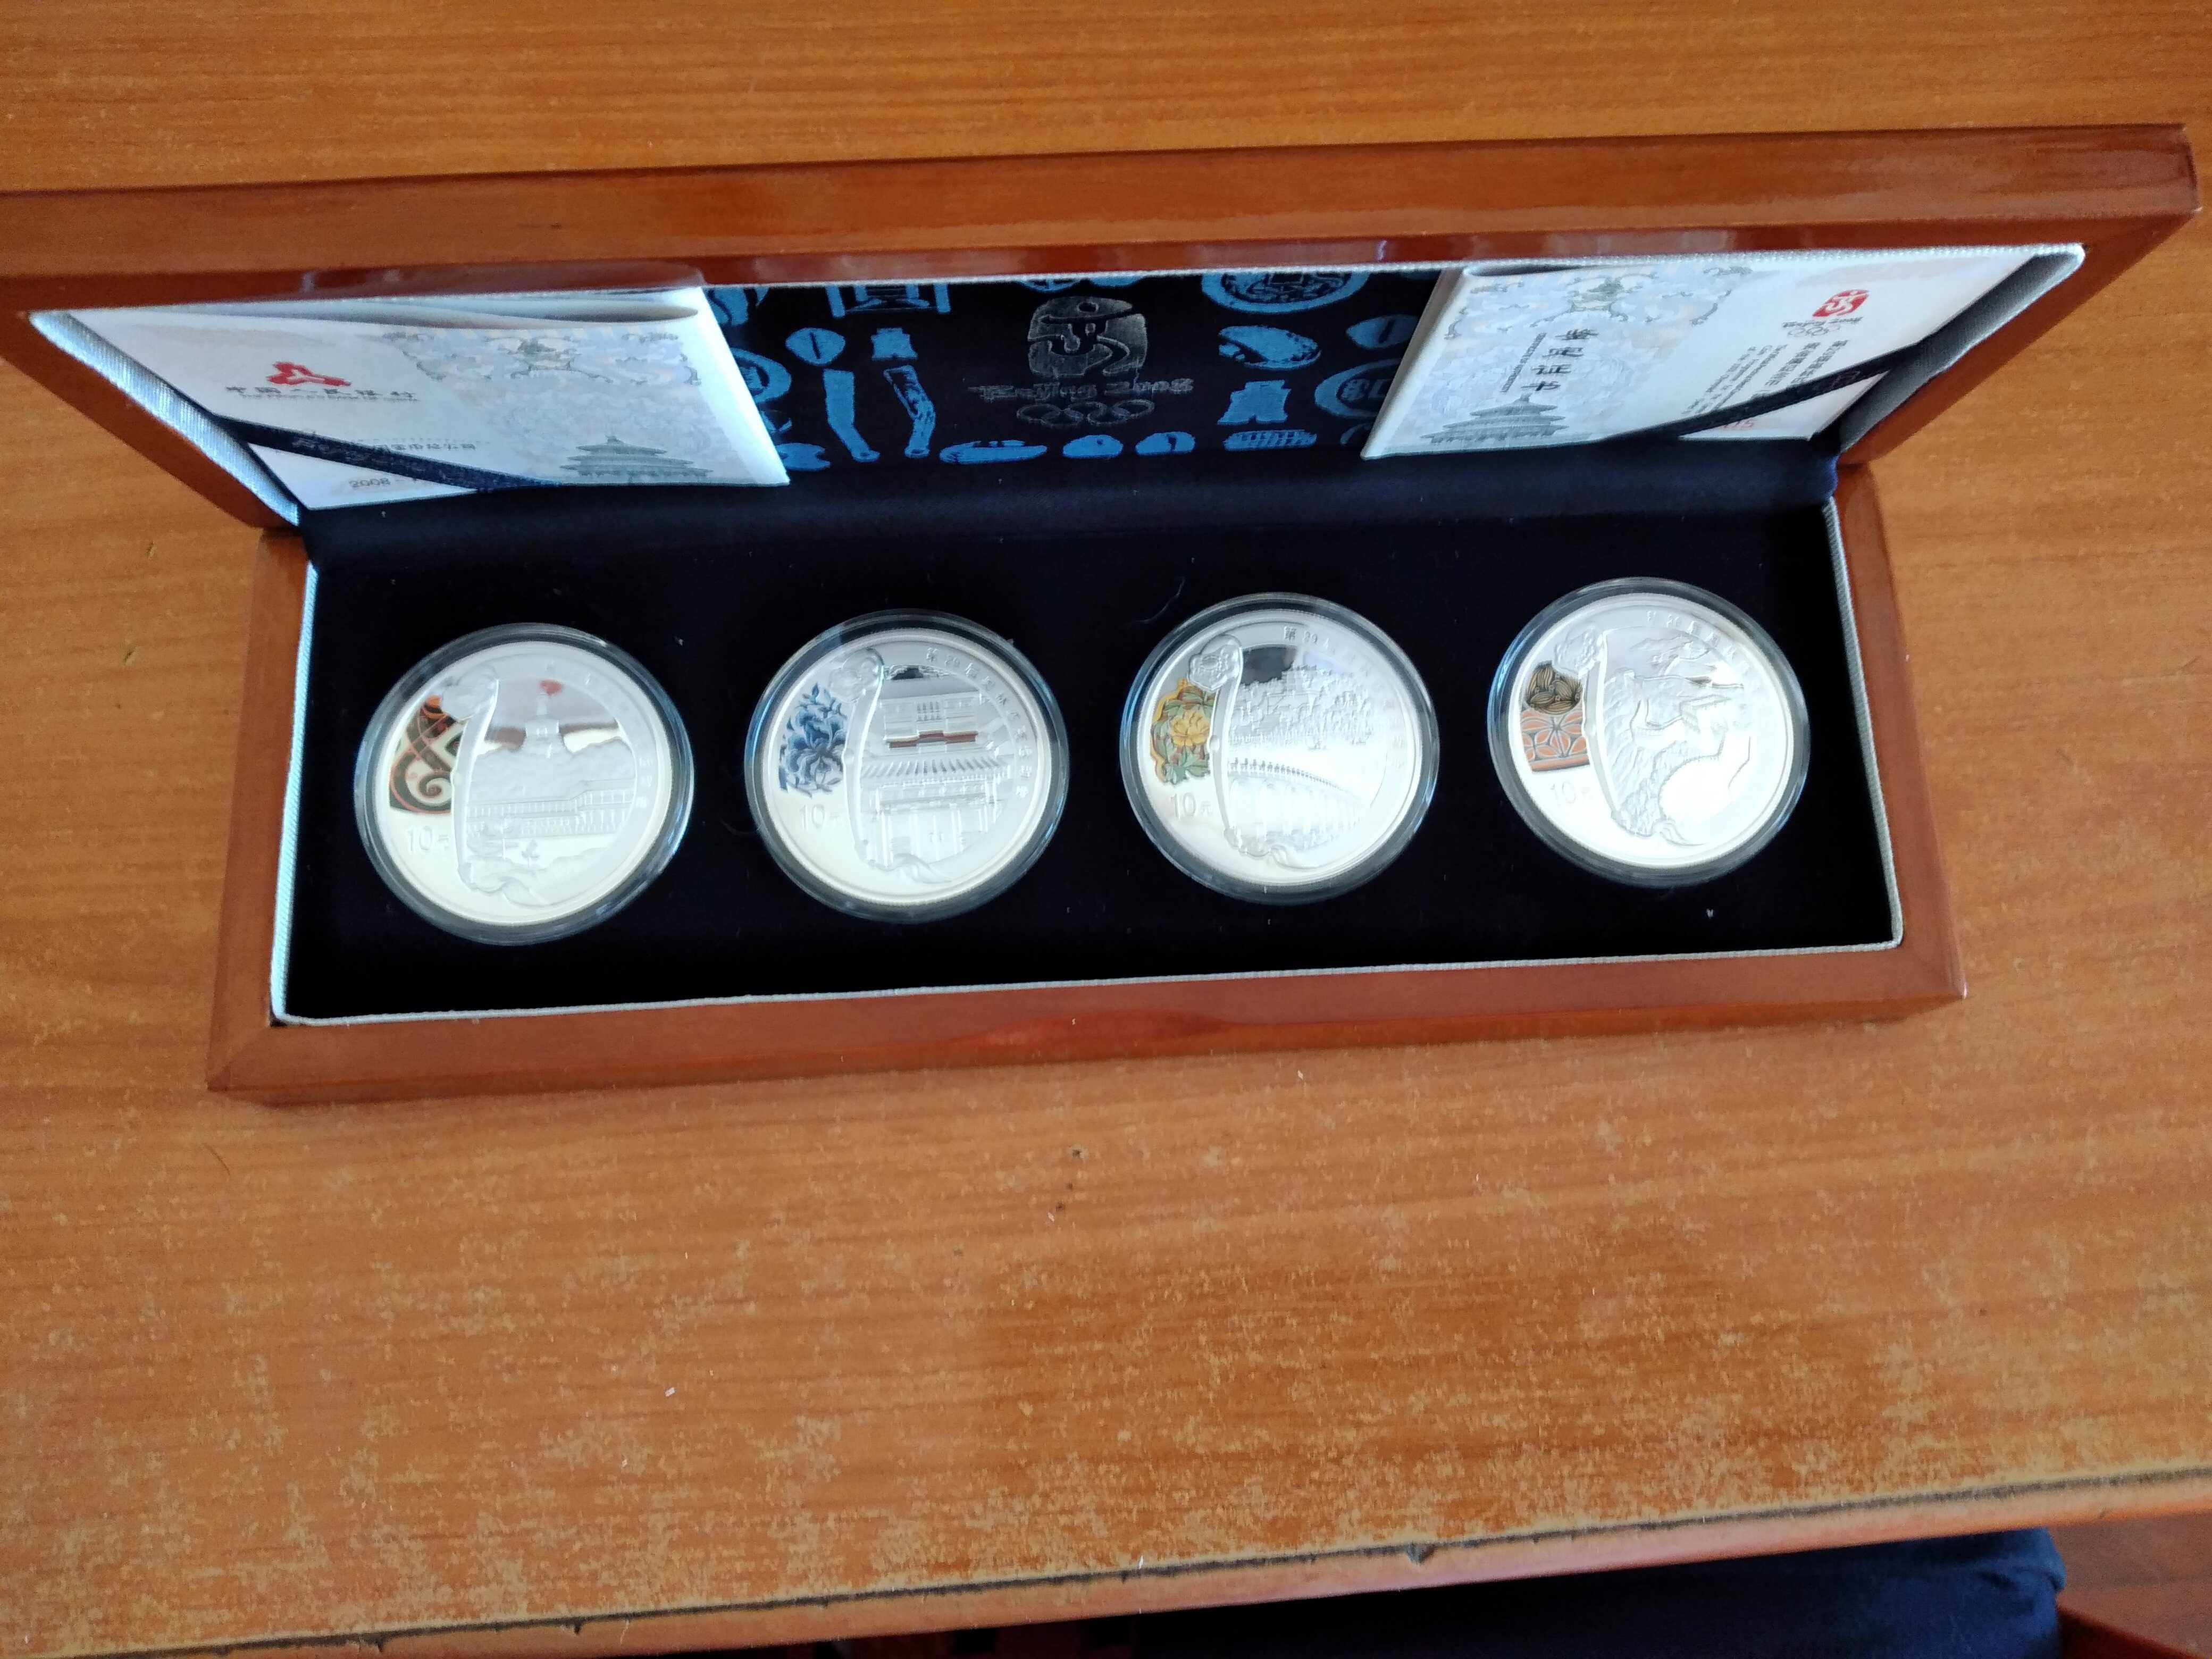 Conjunto moedas de prata Jogos Olimpicos de Pequim 2008